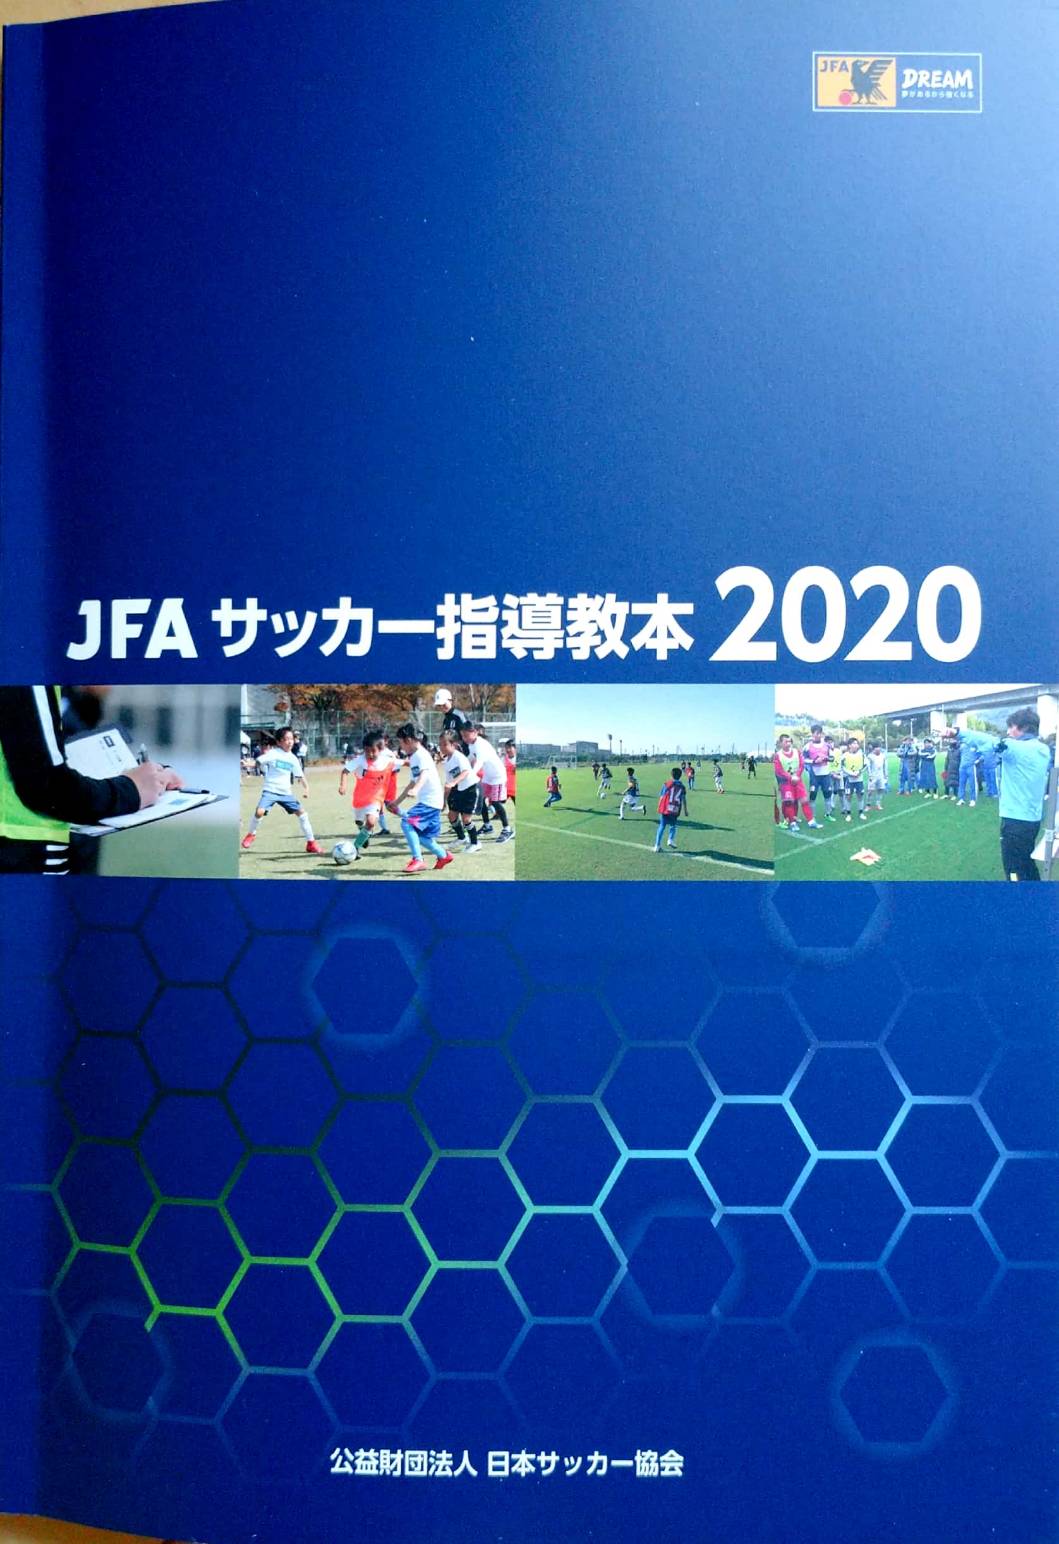 Jfaサッカー指導教本 第三章 プランニング